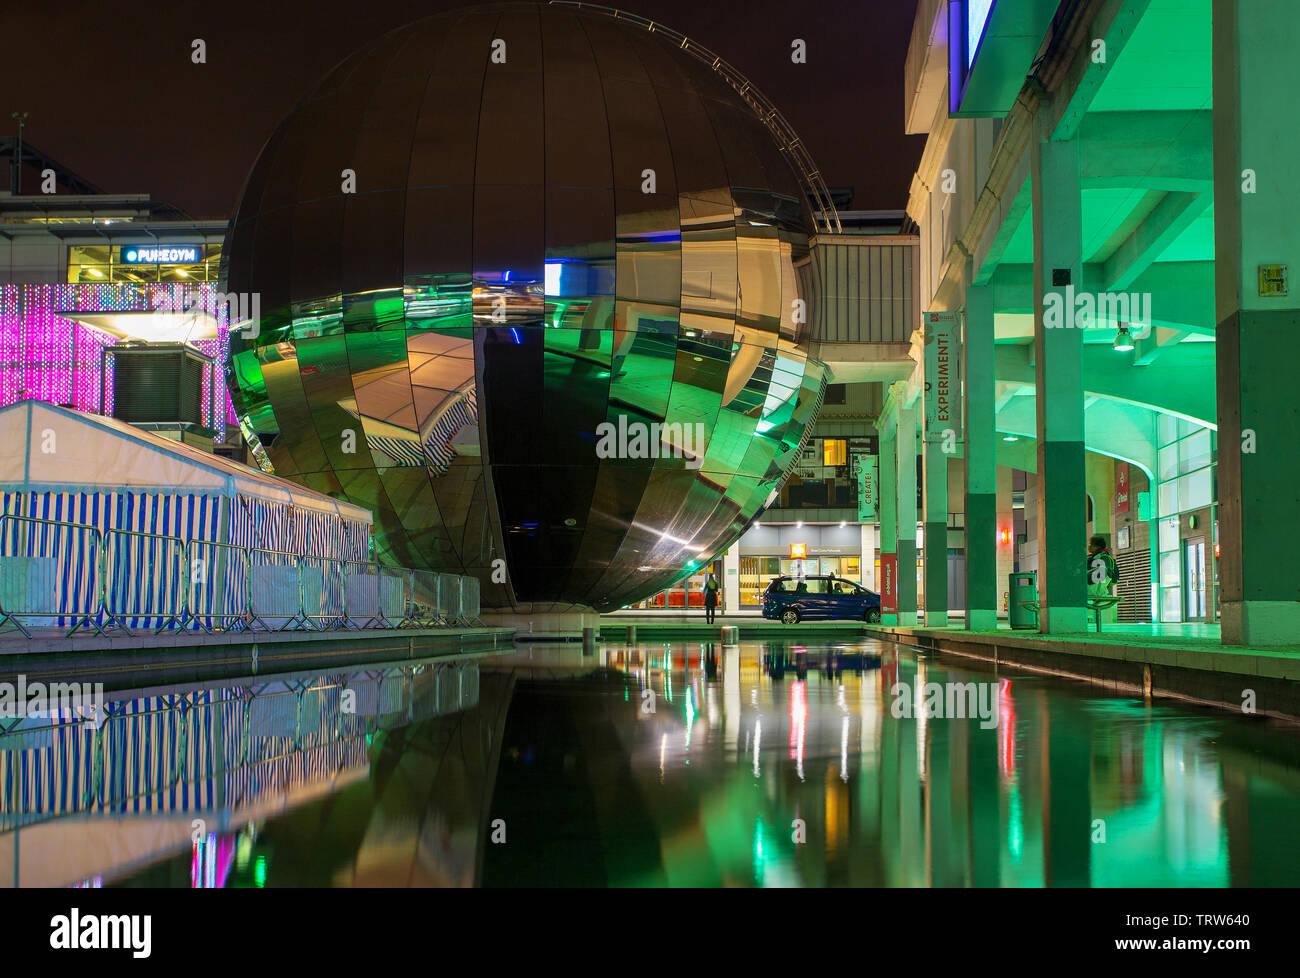 Le Bristol un planétarium planétarium 3D à l'intérieur d'une bille en acier inoxydable éclairés la nuit avec éclairage vert, une partie de "Nous les curieux' Banque D'Images